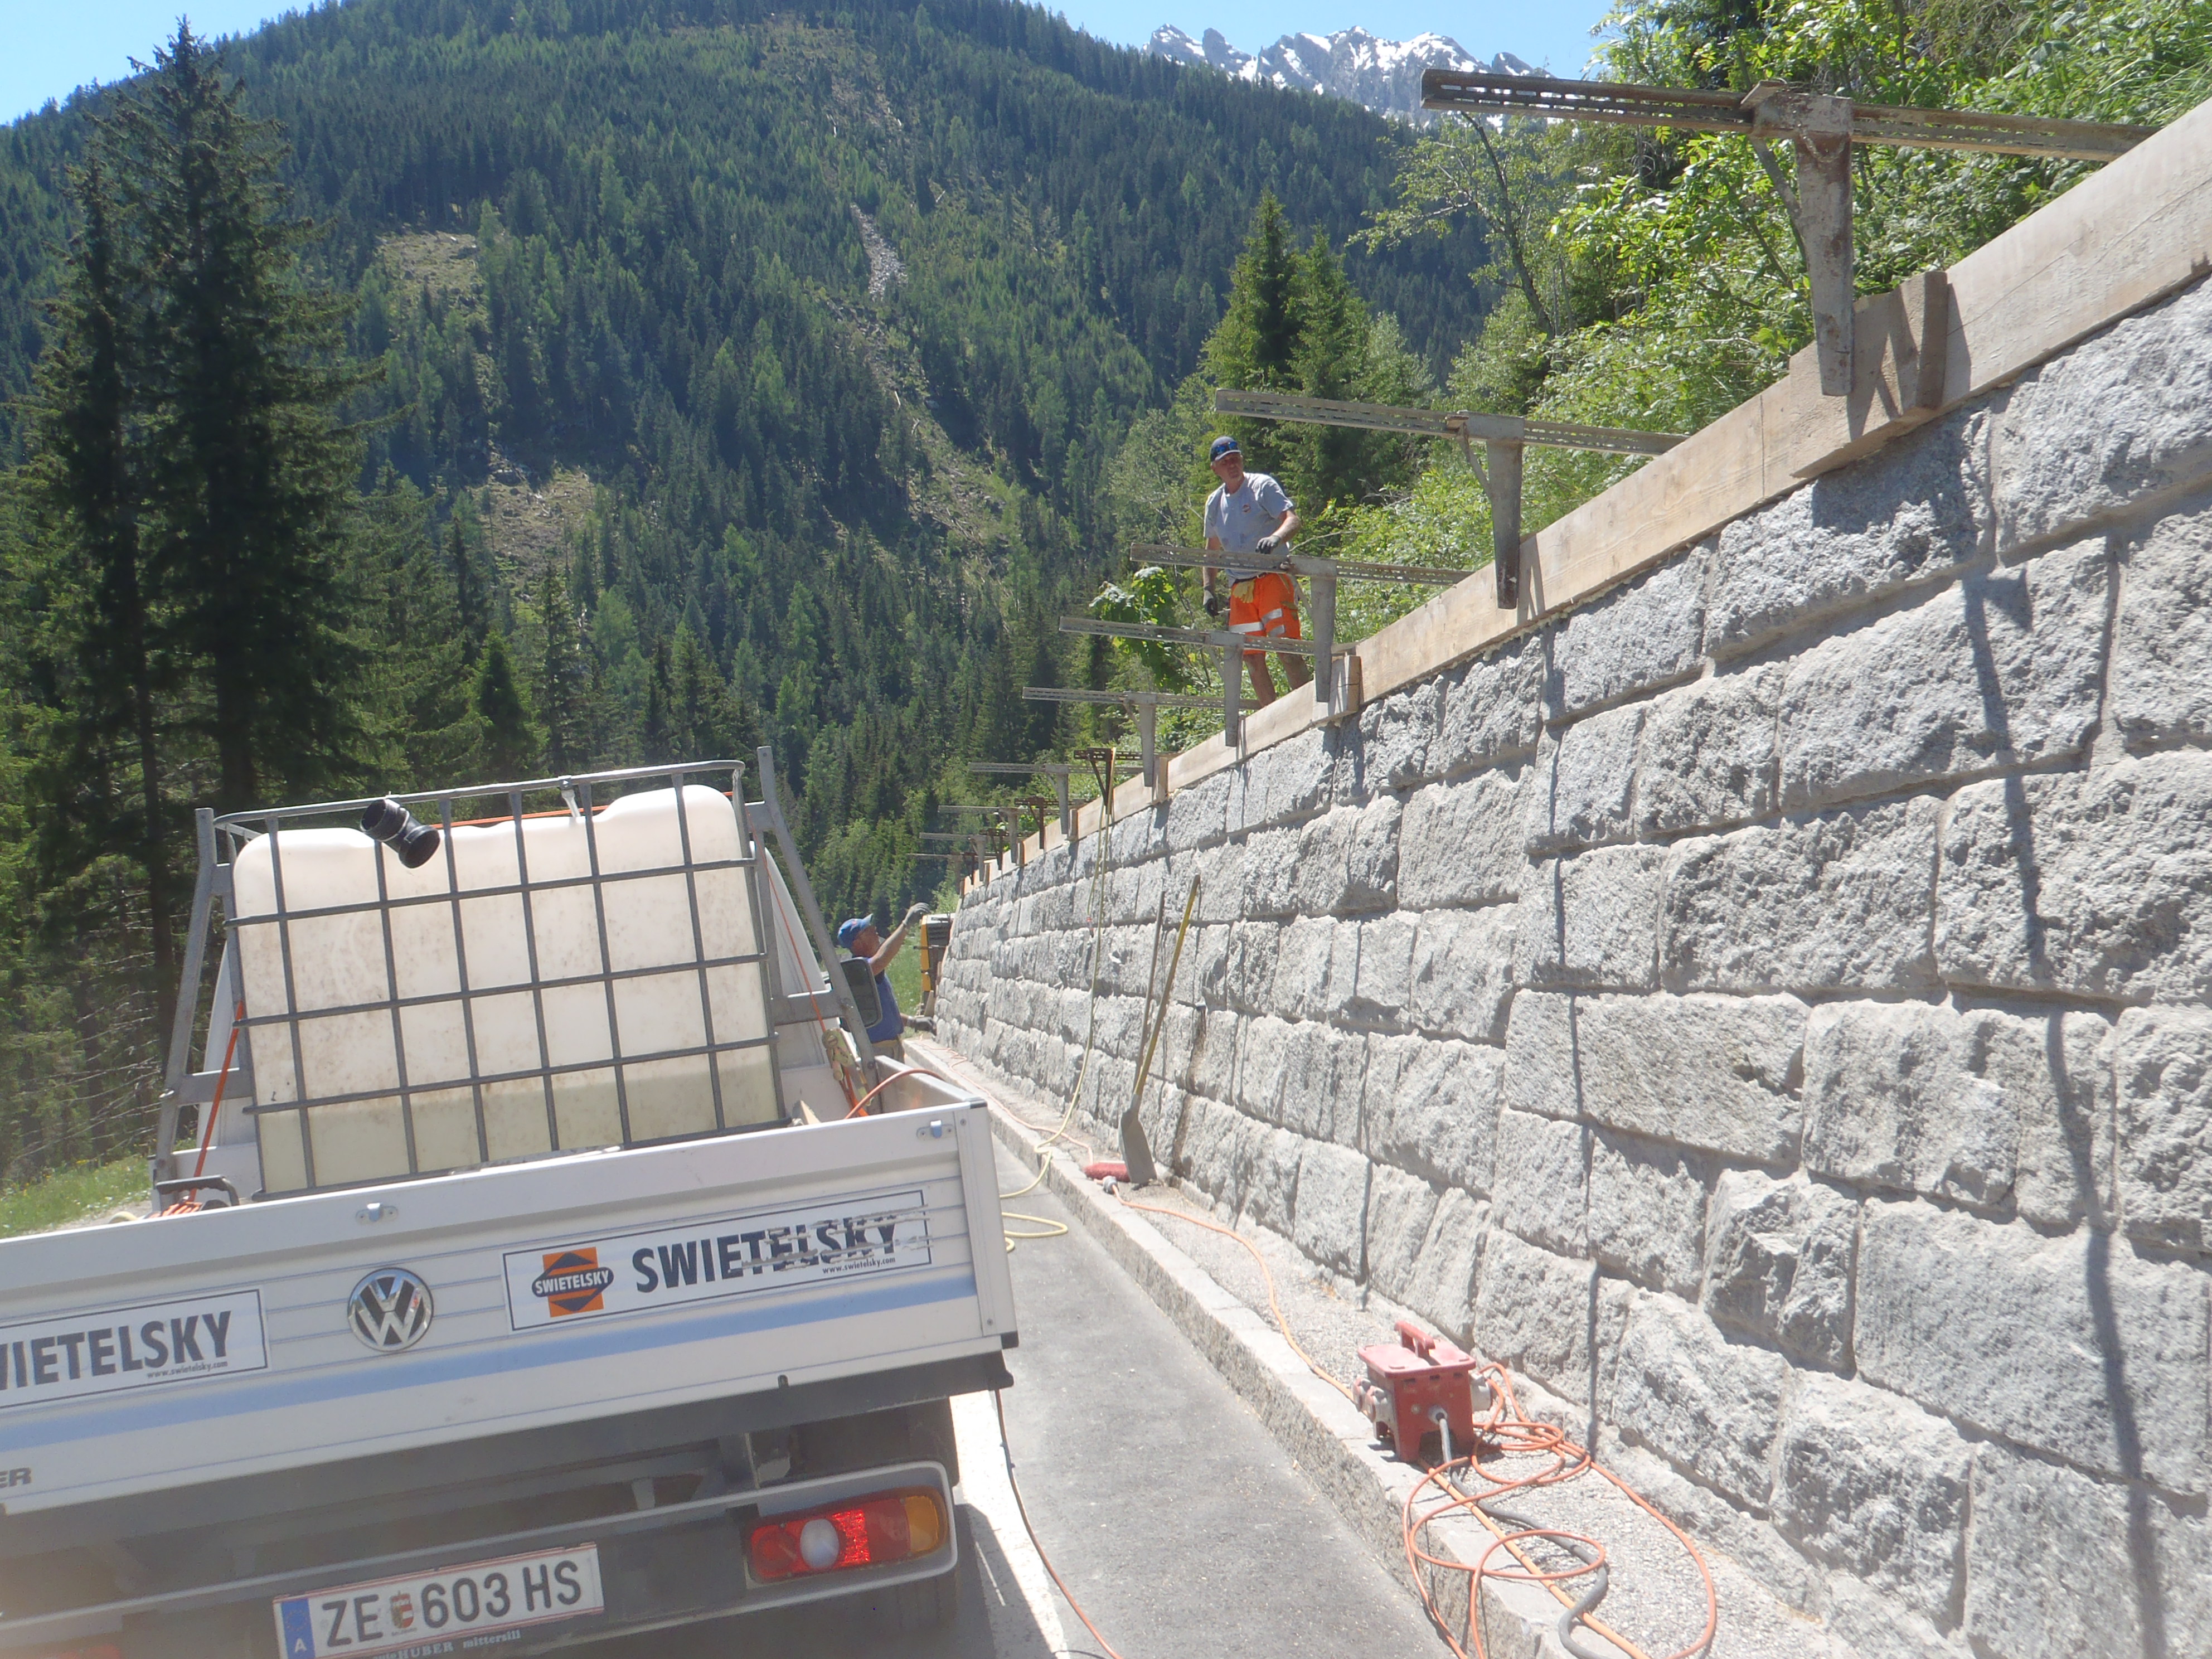 Mauersanierung an der Gerlos Alpenstraße in Krimml - Road and bridge construction